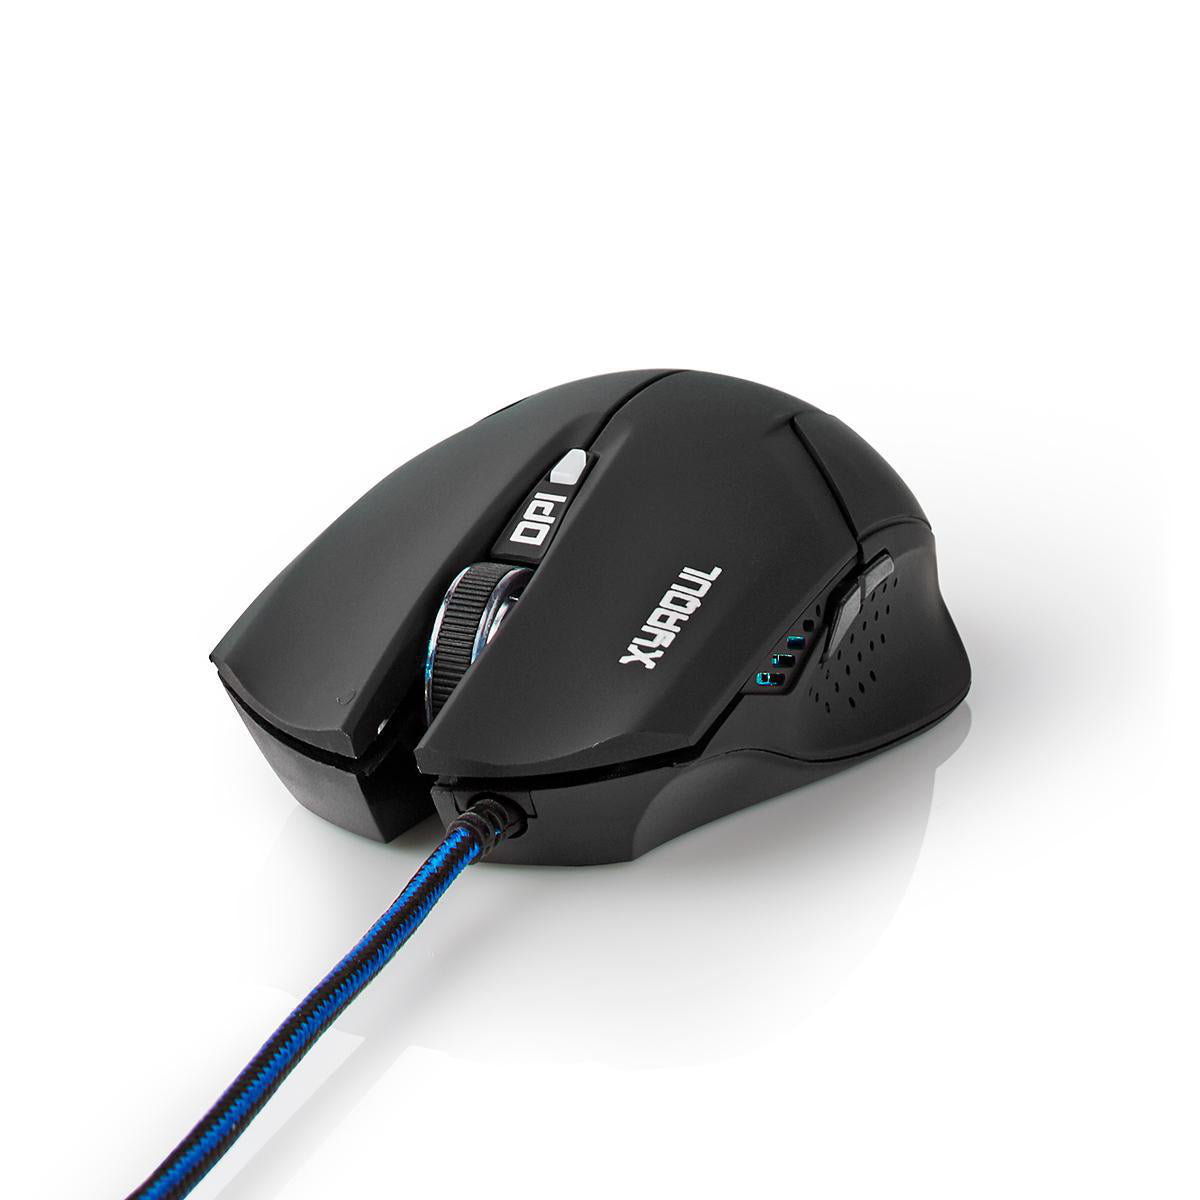 Optische Gamer Maus 1600dpi USB 6-Tasten LED Gaming Mouse PC Computer e-Sport